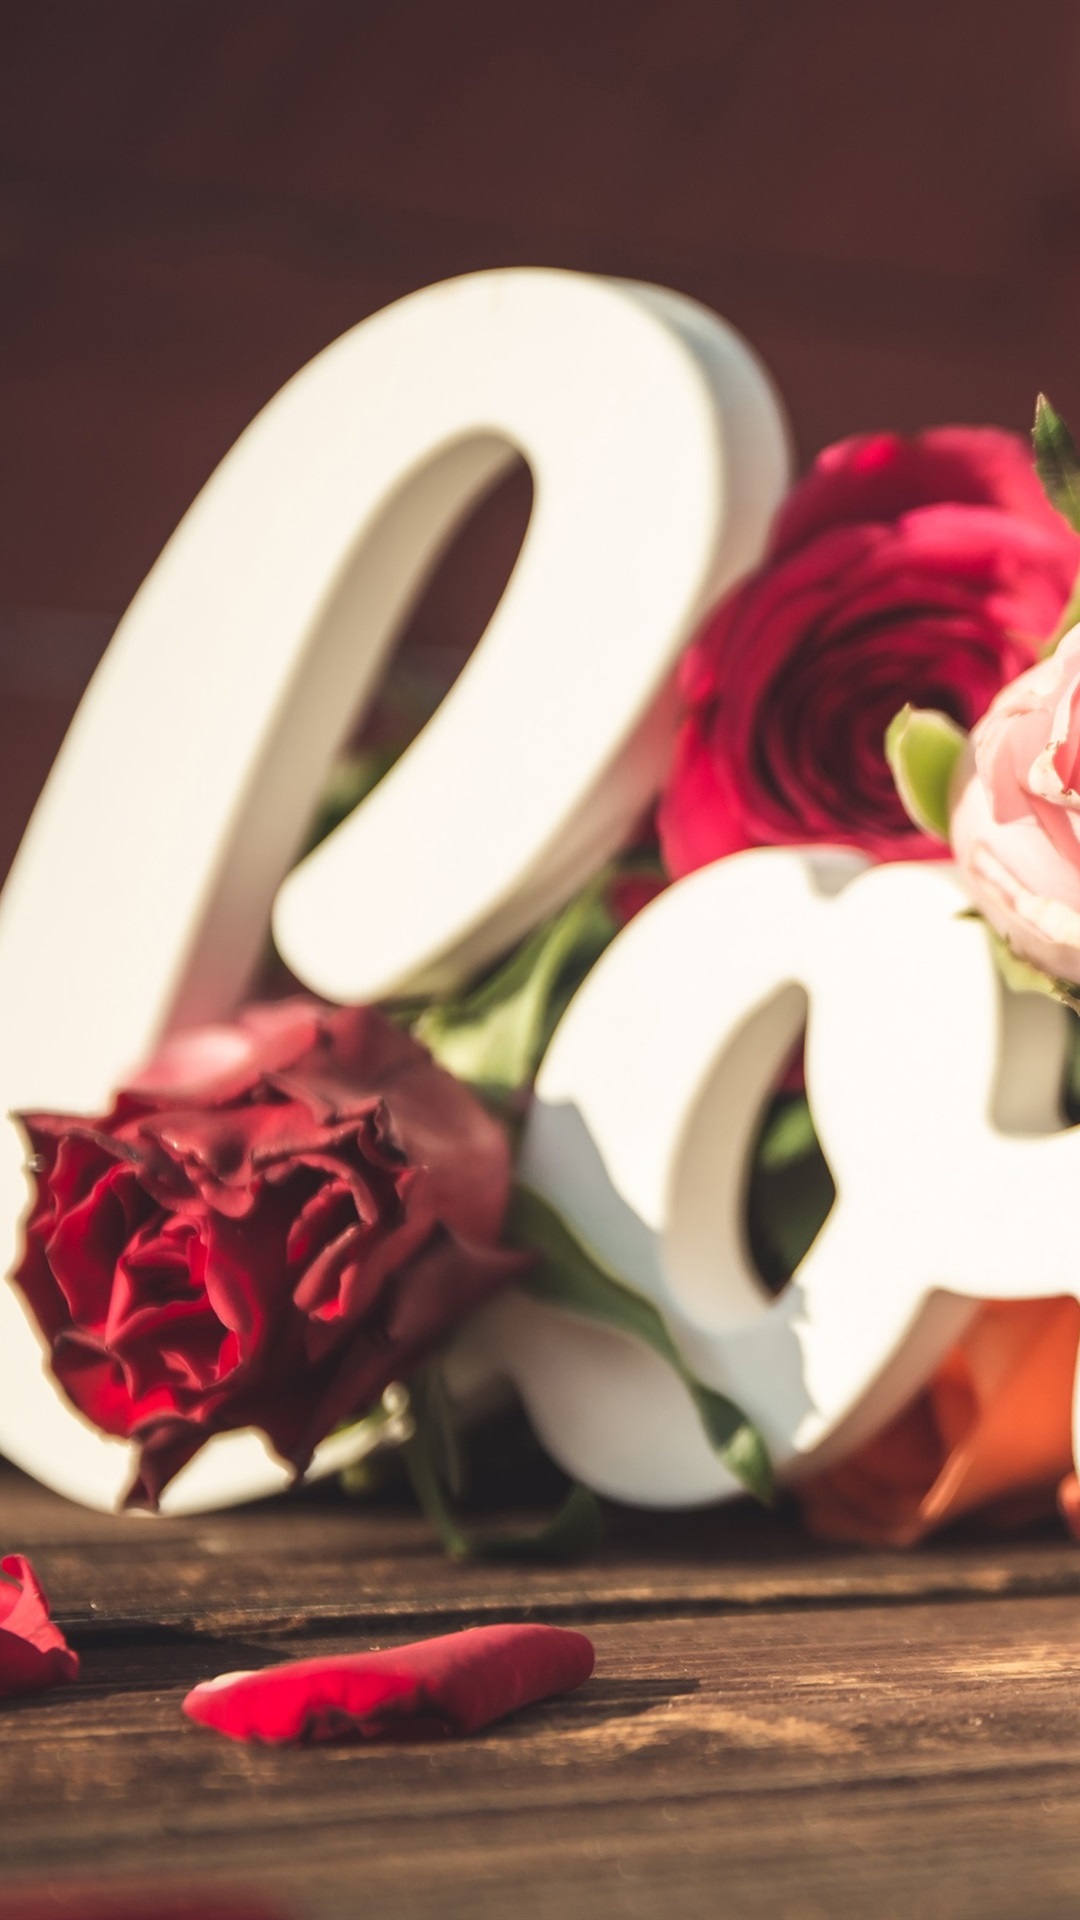 Iphone Wallpaper Love, Roses, Hearts, Petals, Romantic - Love Rose With Hearts - HD Wallpaper 